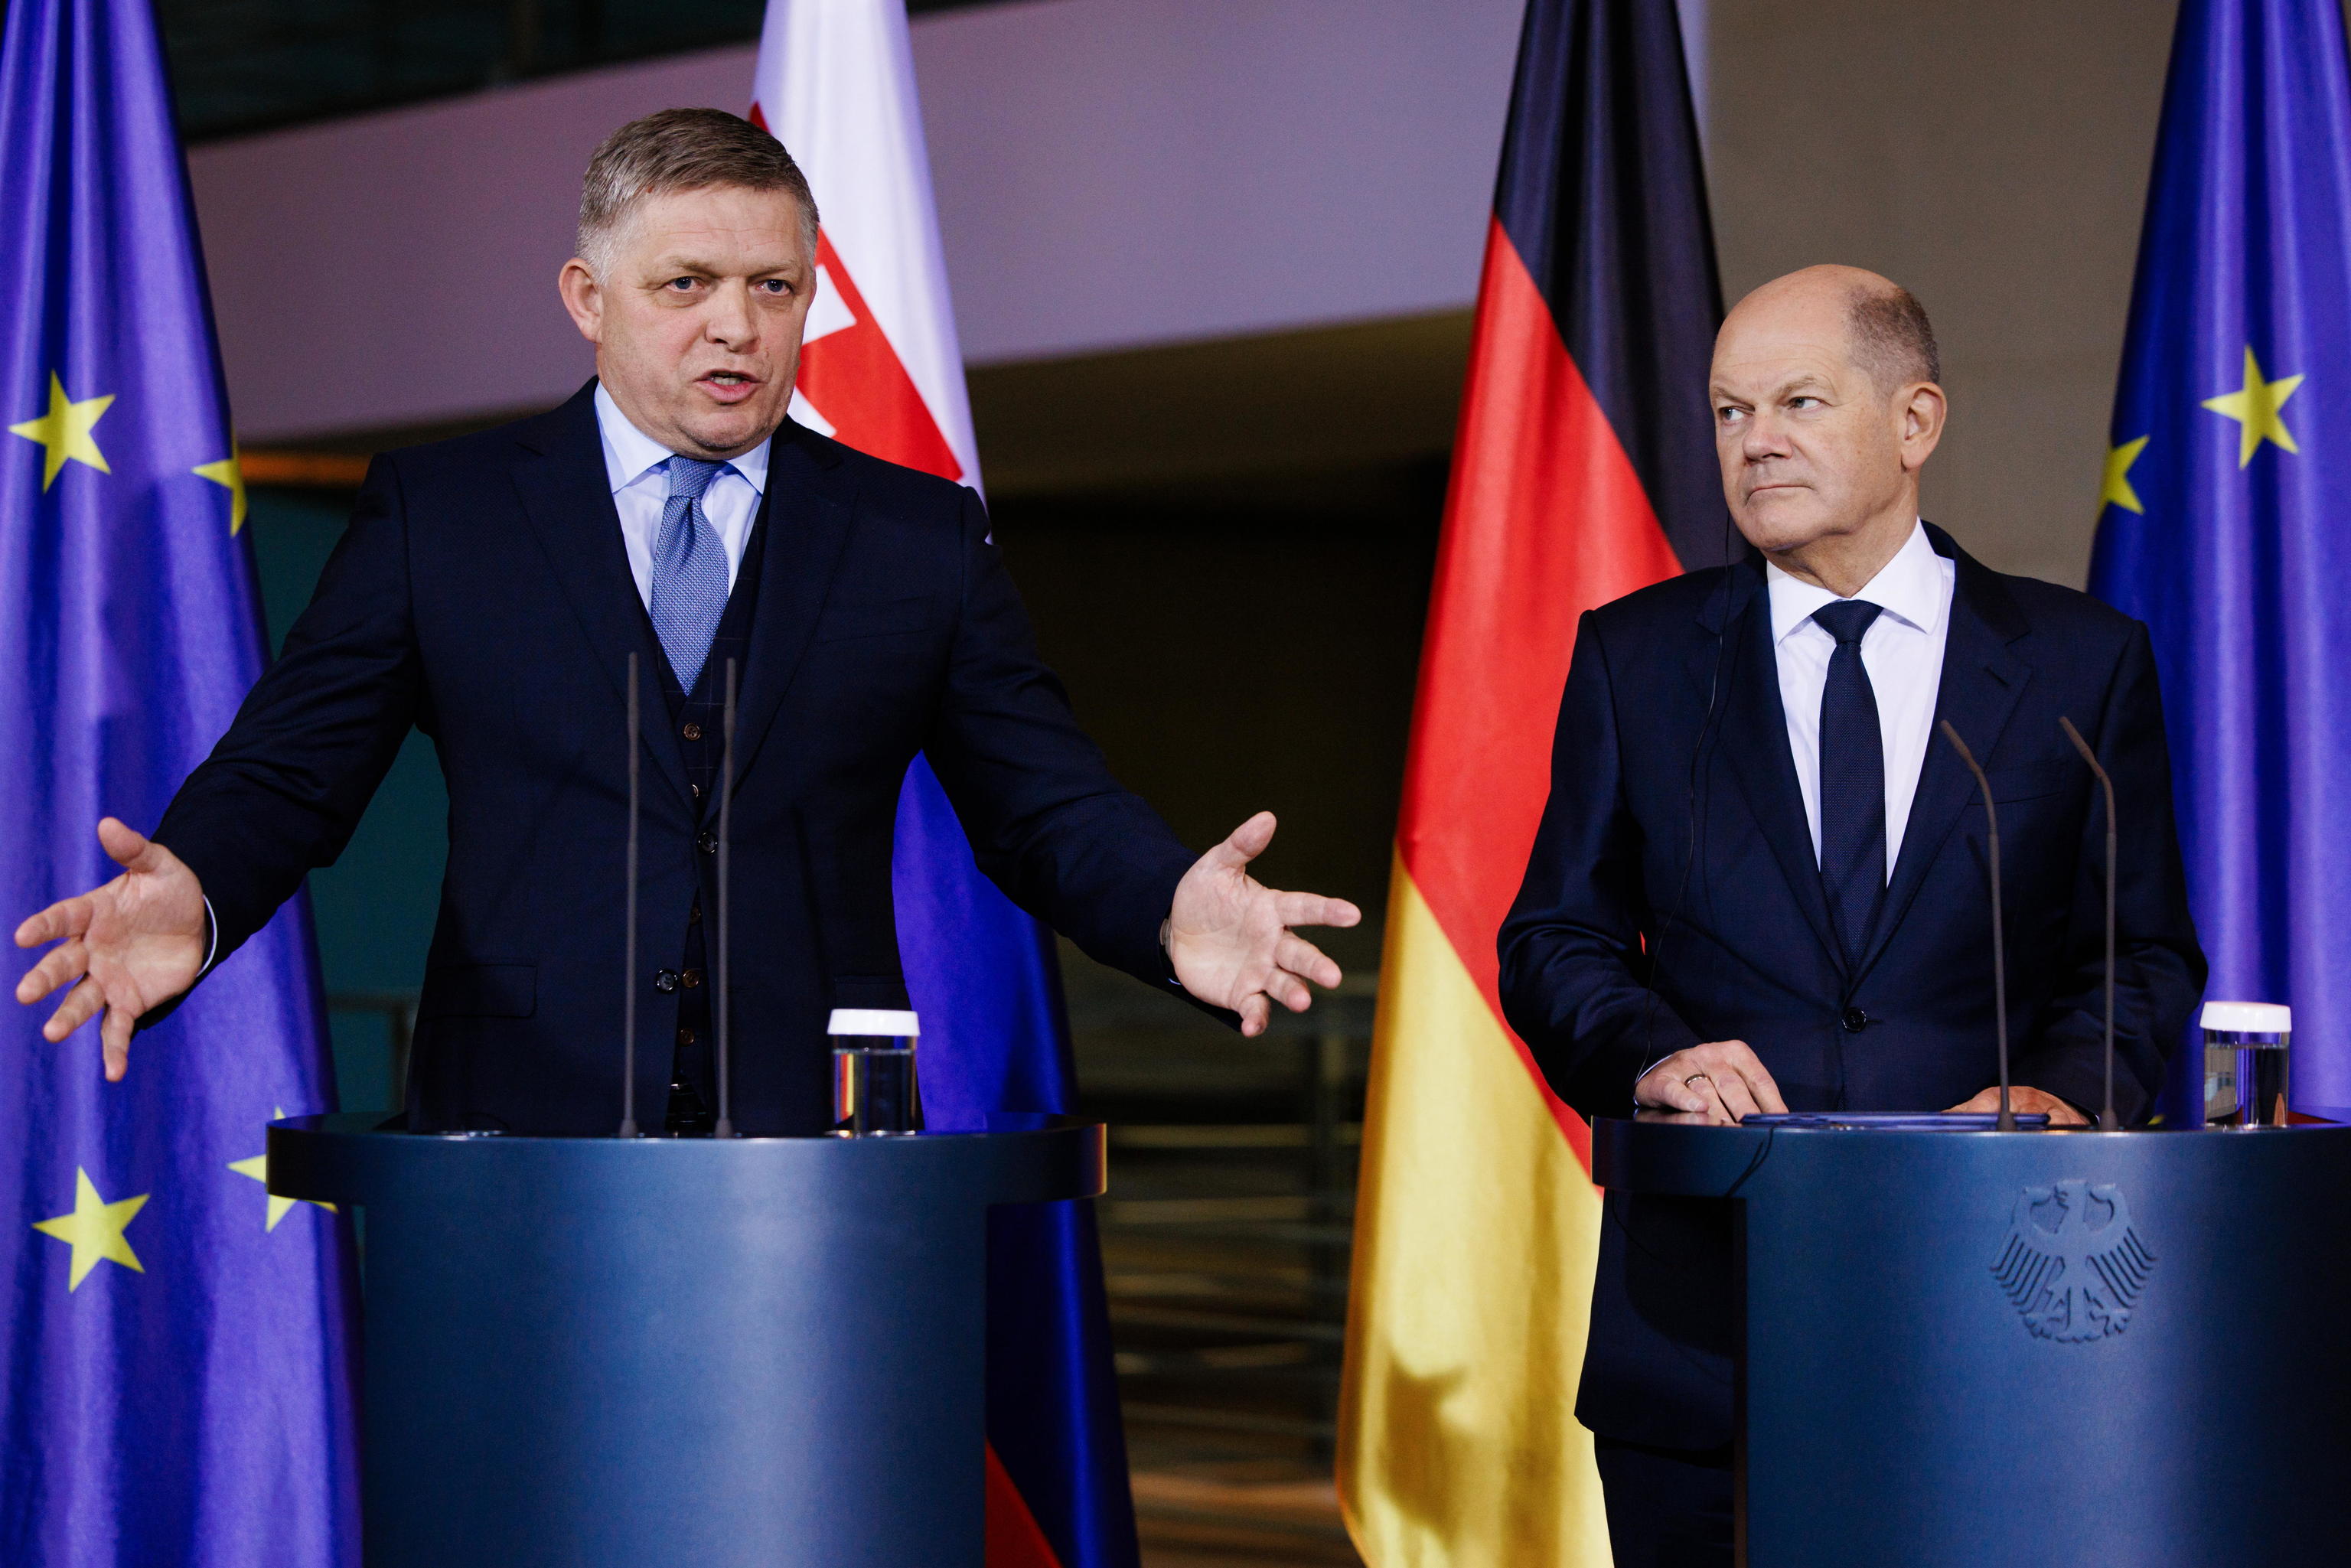 Fico apoyará la ayuda comunitaria a Ucrania y considera legítimo dudar de Zelenski